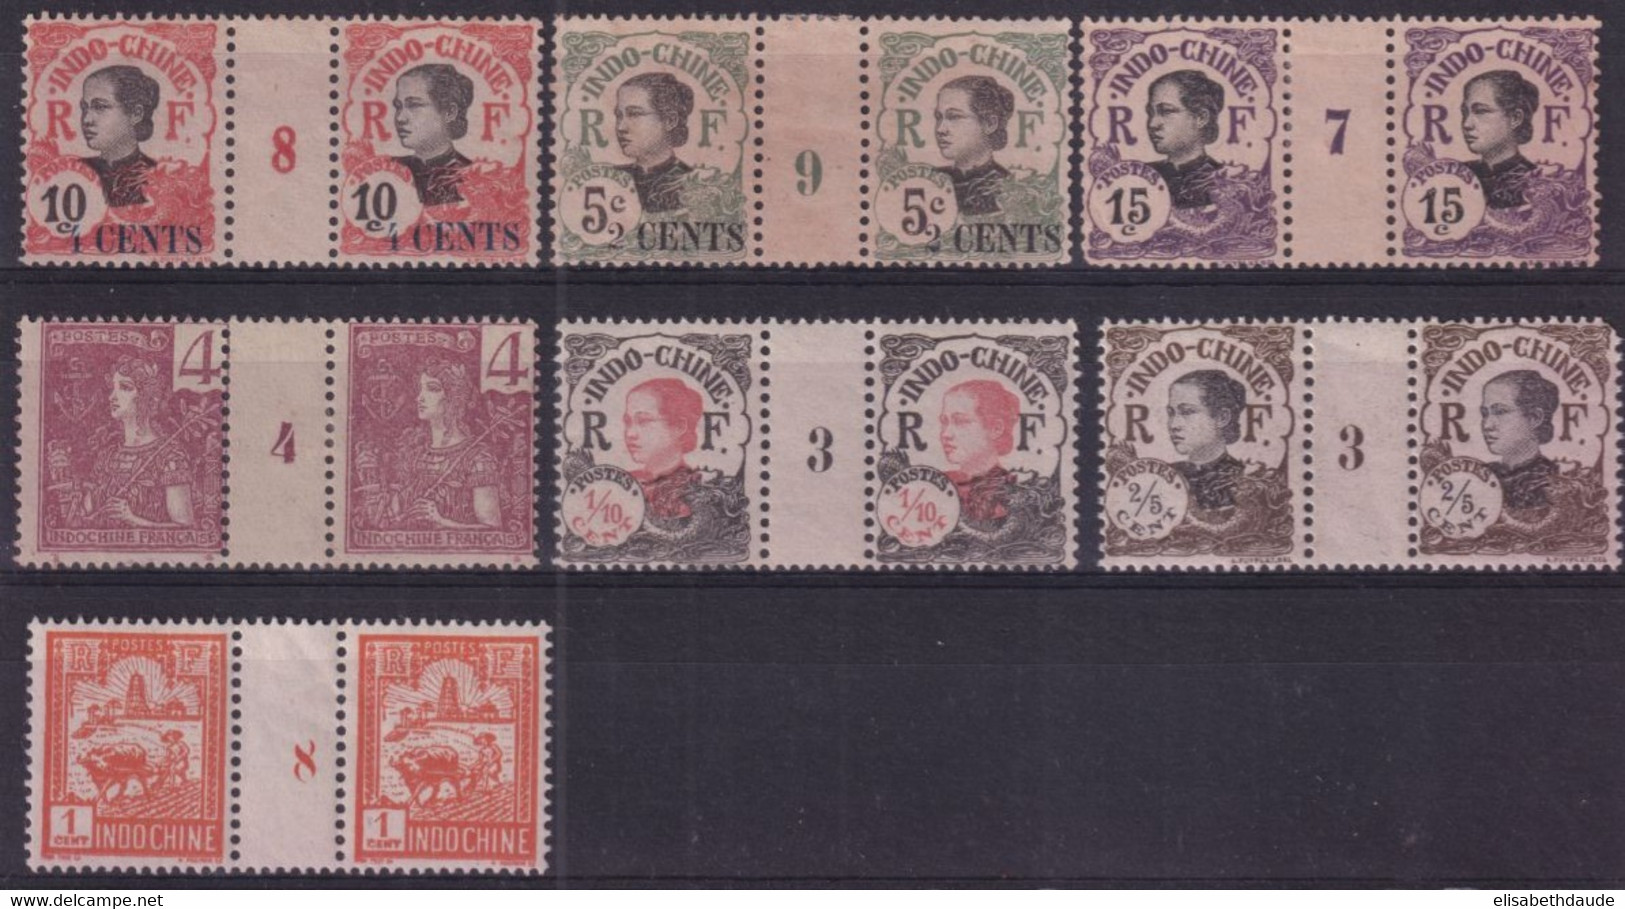 INDOCHINE - MILLESIMES - YVERT N°26 (*) + N°46 (*) + N°75/76 (*) + N°96 ET 98 ** MNH + N°127 ** MNH - COTE = 147 EUR - Unused Stamps